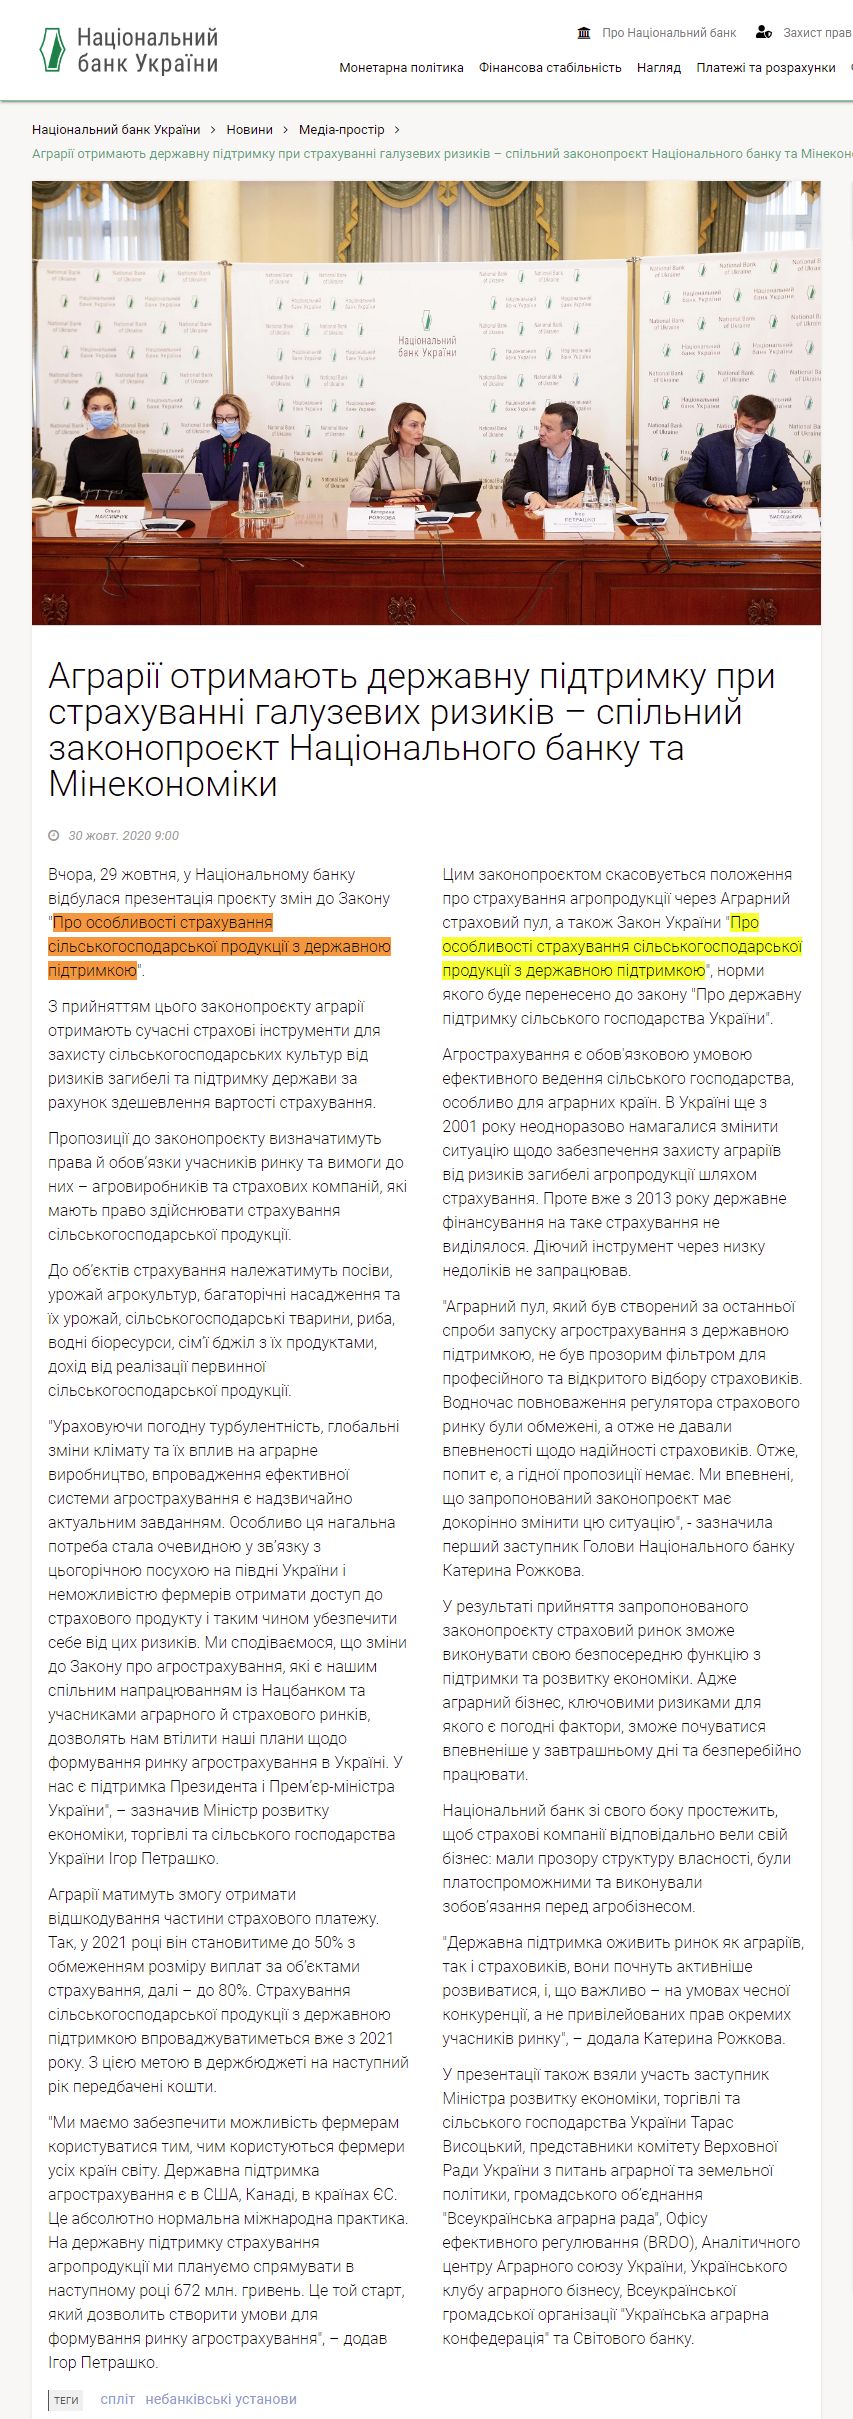 https://bank.gov.ua/ua/news/all/agrariyi-otrimayut-derjavnu-pidtrimku-pri-strahuvanni-galuzevih-rizikiv--spilniy-zakonoproyekt-natsionalnogo-banku-ta-minekonomiki